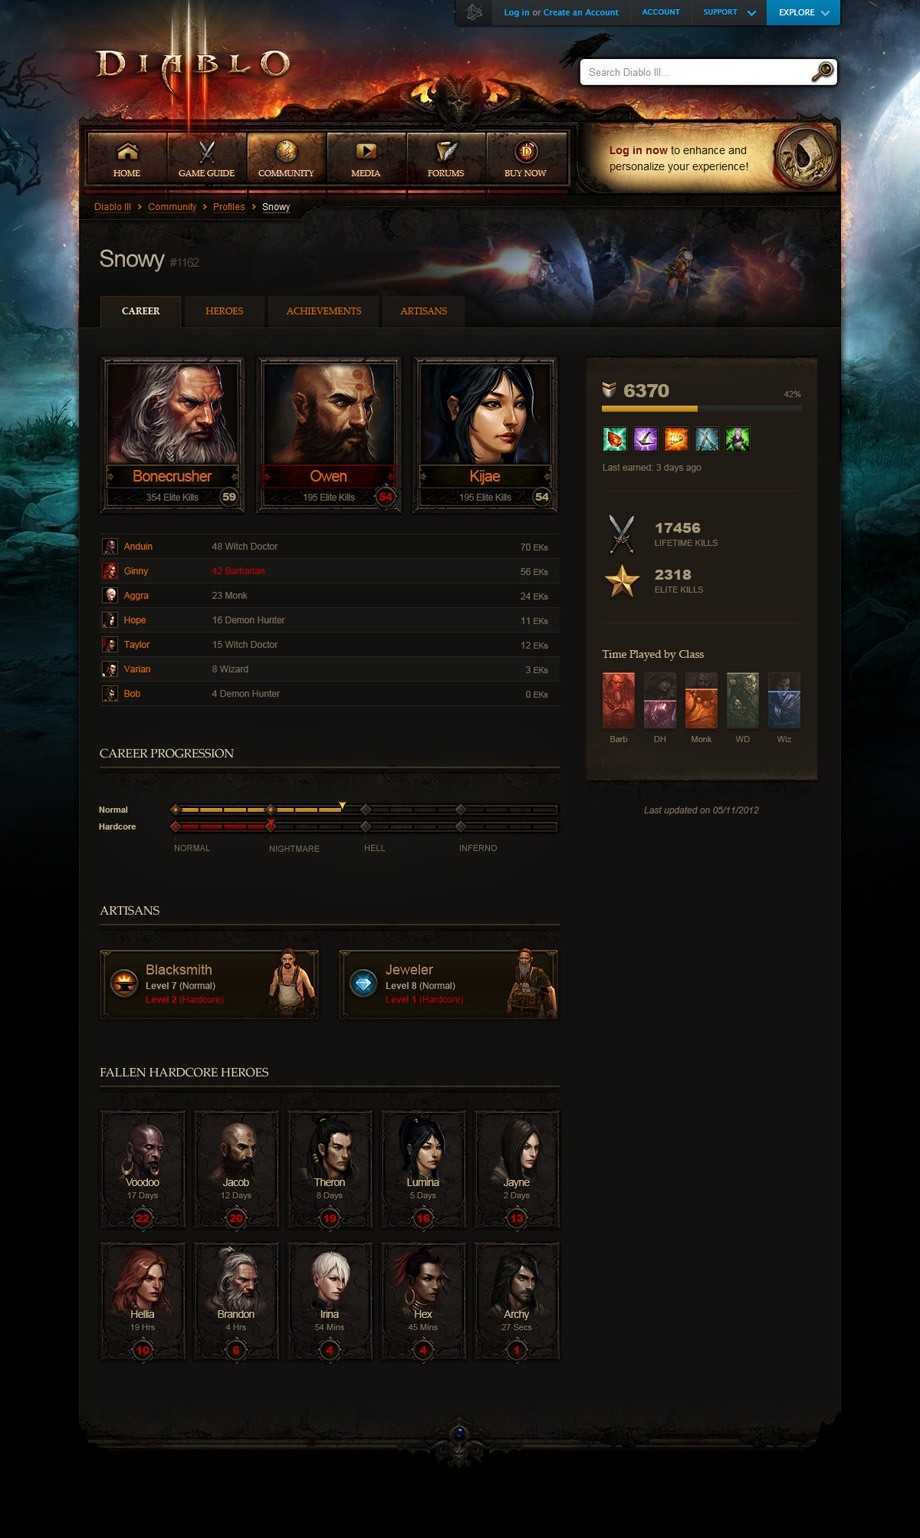 Diablo 3 - Kommendes Feature: Charakter-Profile angekündigt